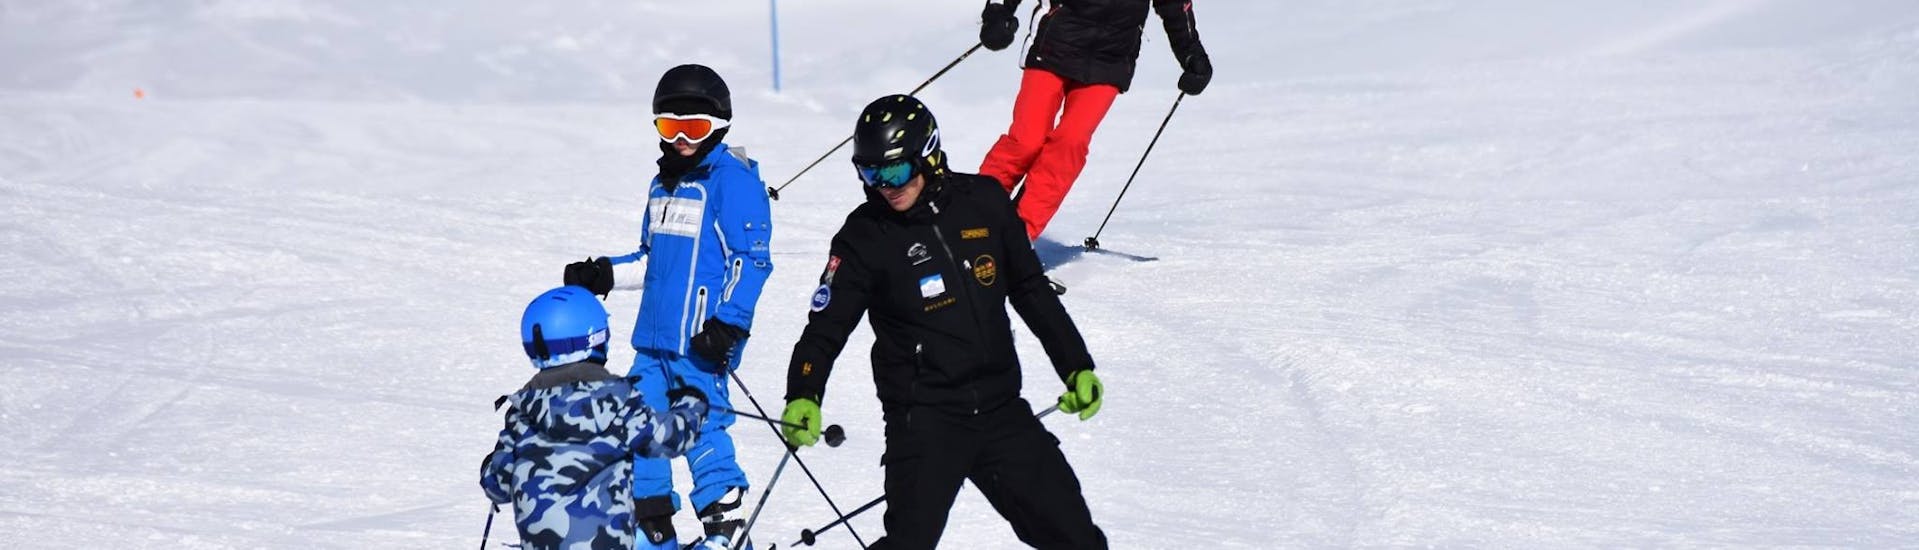 Skileraar en studenten skiën naar beneden in de sneeuwploeg tijdens de skilessen voor kinderen voor beginners met Ski Cool St. Moritz.